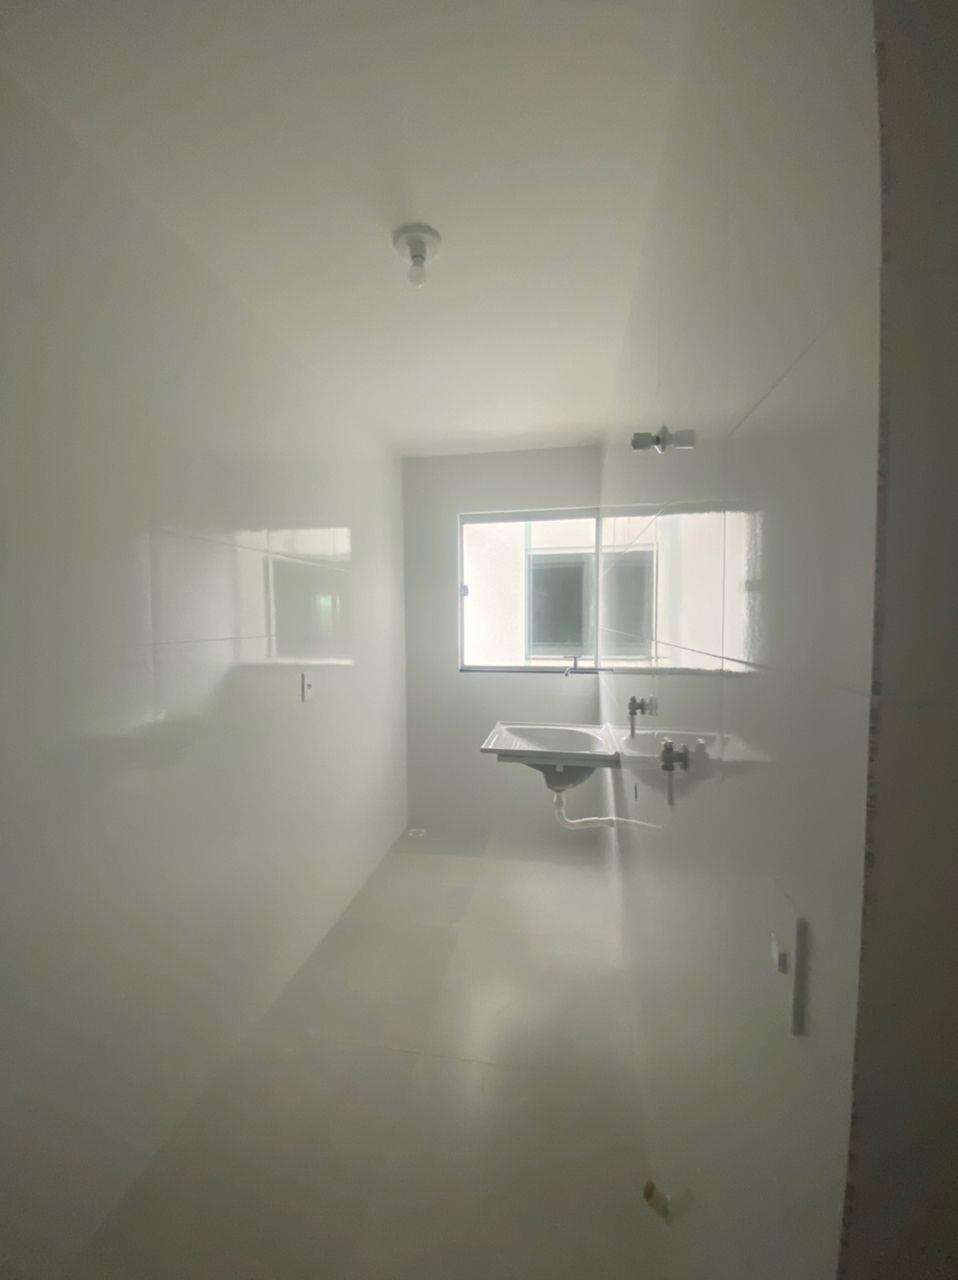 Apartamento 3 quartos para aluguel no Rafael José de Lima: e9cf0a19-0-4a0cbf76-2d82-4a53-a15b-4f39f2f38020.jpg